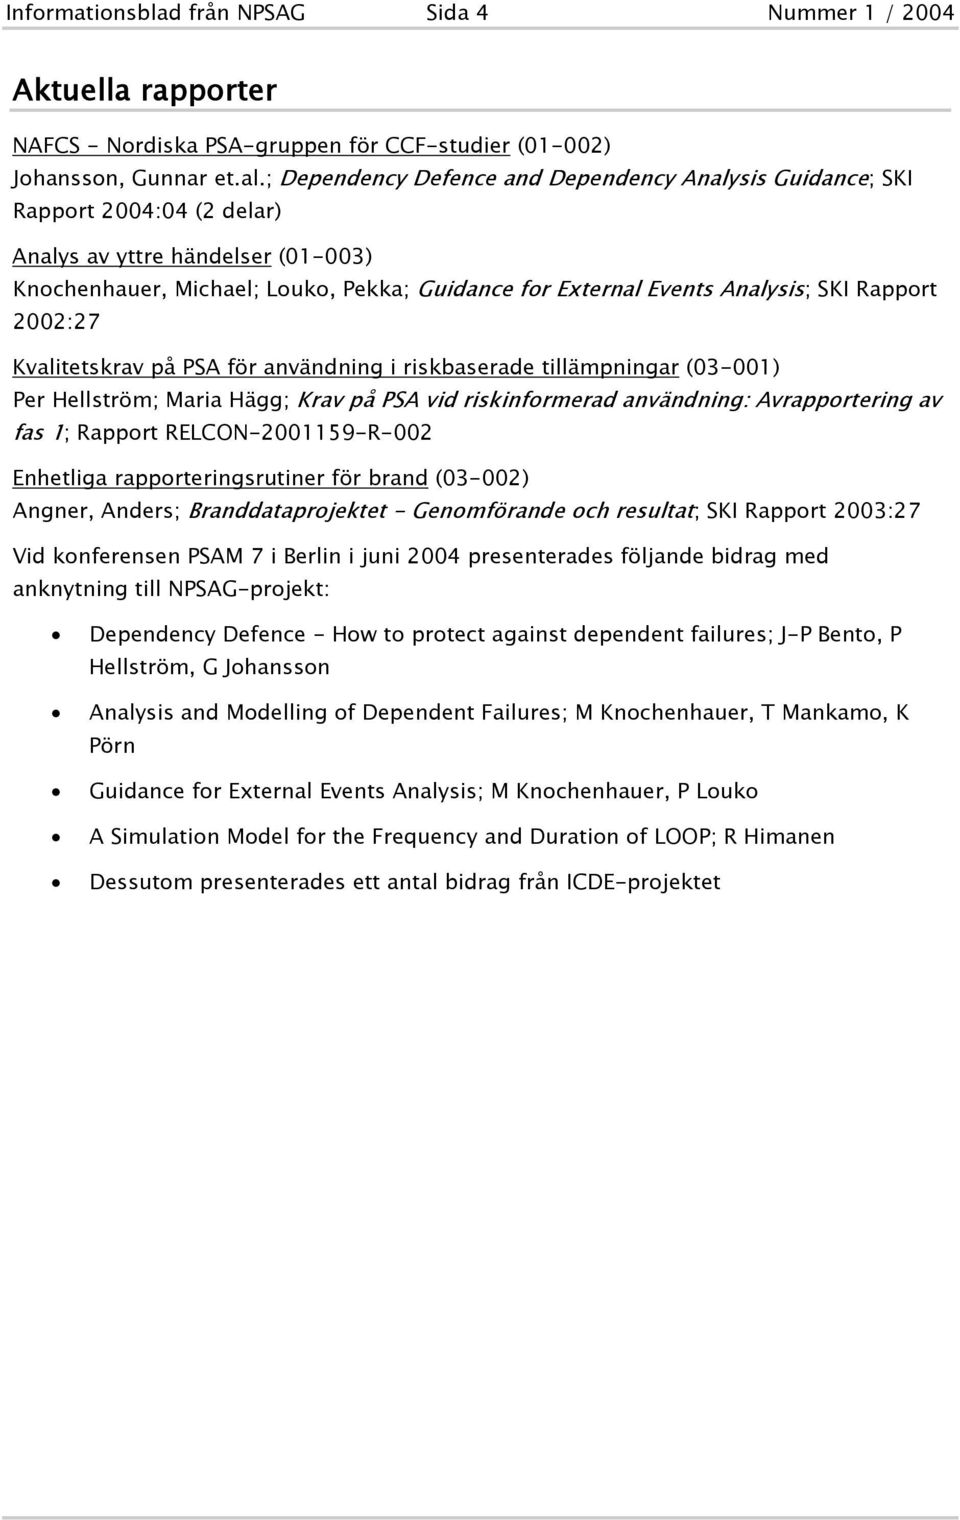 Rapport 2002:27 Kvalitetskrav på PSA för användning i riskbaserade tillämpningar (03-001) Per Hellström; Maria Hägg; Krav på PSA vid riskinformerad användning: Avrapportering av fas 1; Rapport